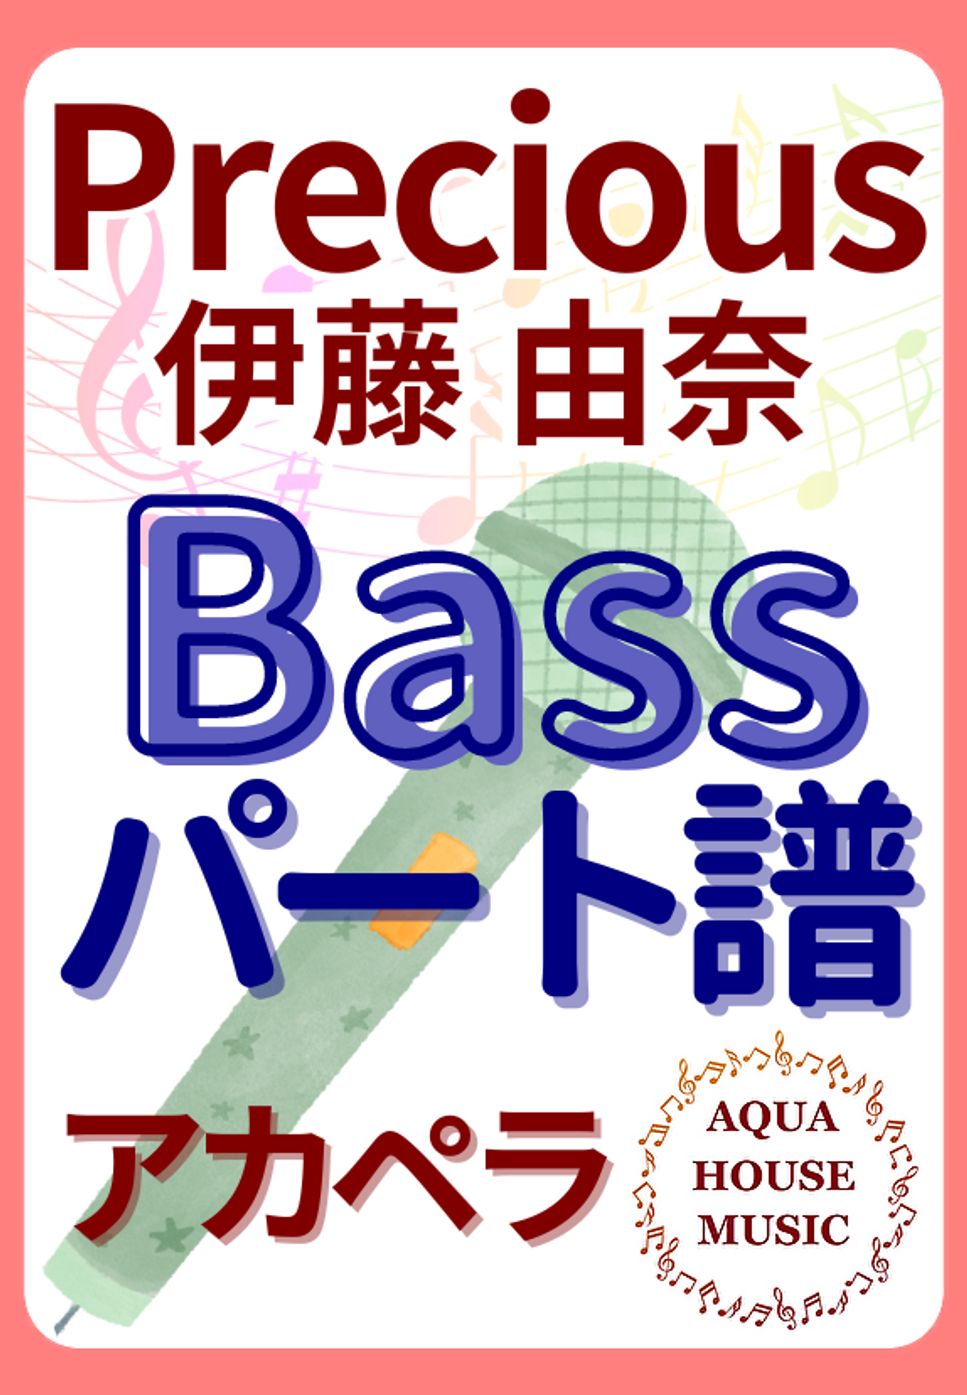 伊藤 由奈 - PRECIOUS (アカペラ楽譜♪Bassパート譜) by 飯田 亜紗子